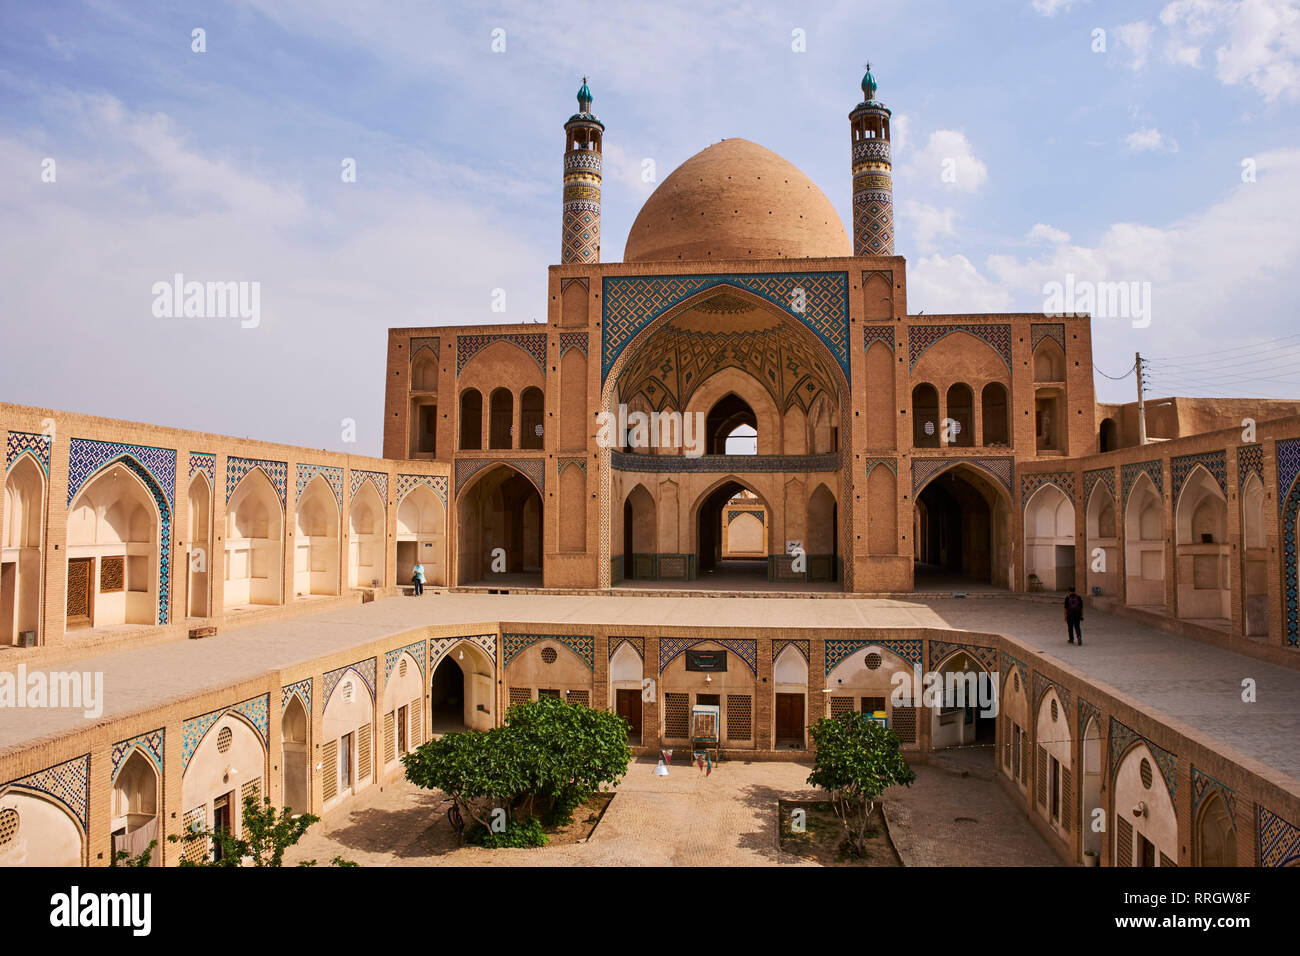 Mosquée de vendredi, Kashan ville, province d'Isfahan, Iran, Moyen-Orient Banque D'Images